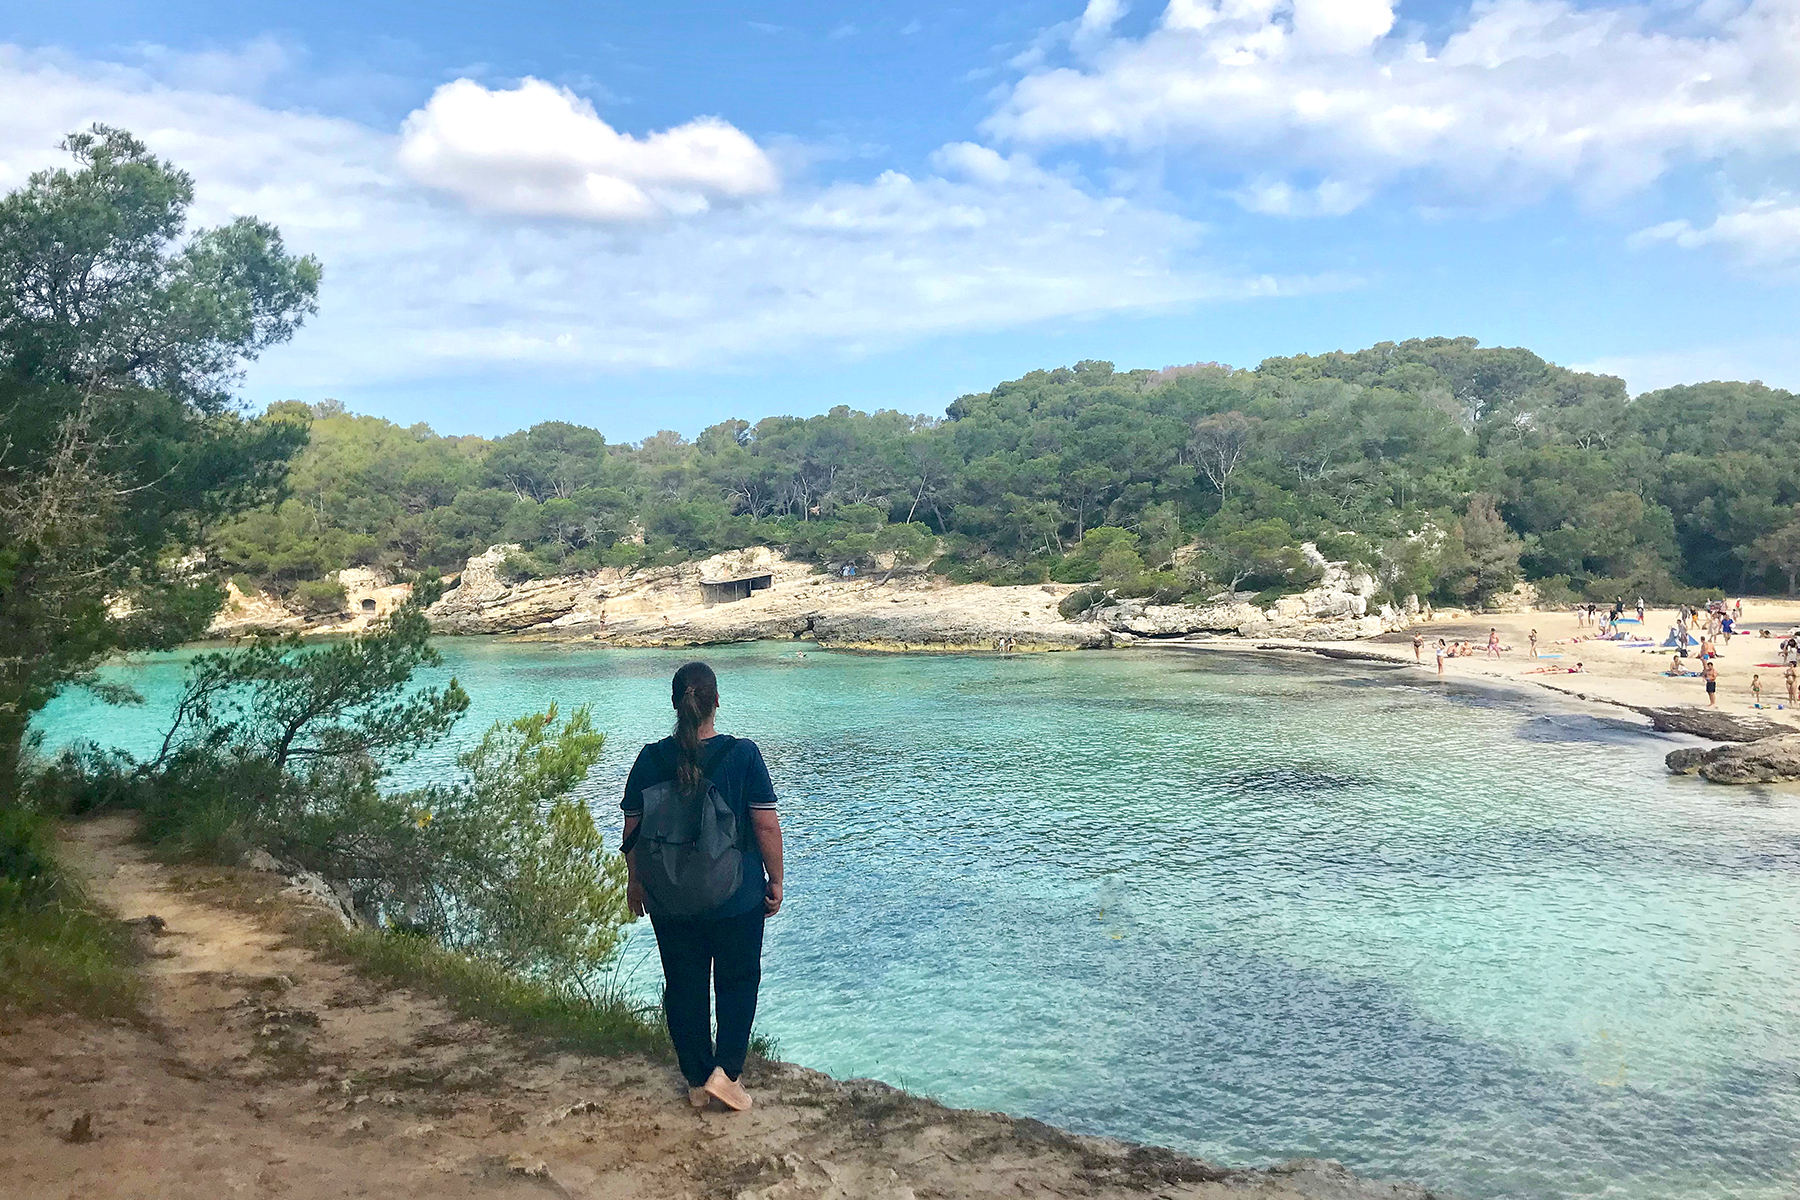 Menorca statt Mallorca: 15 Highlights, die man im Urlaub auf Menorca erleben muss